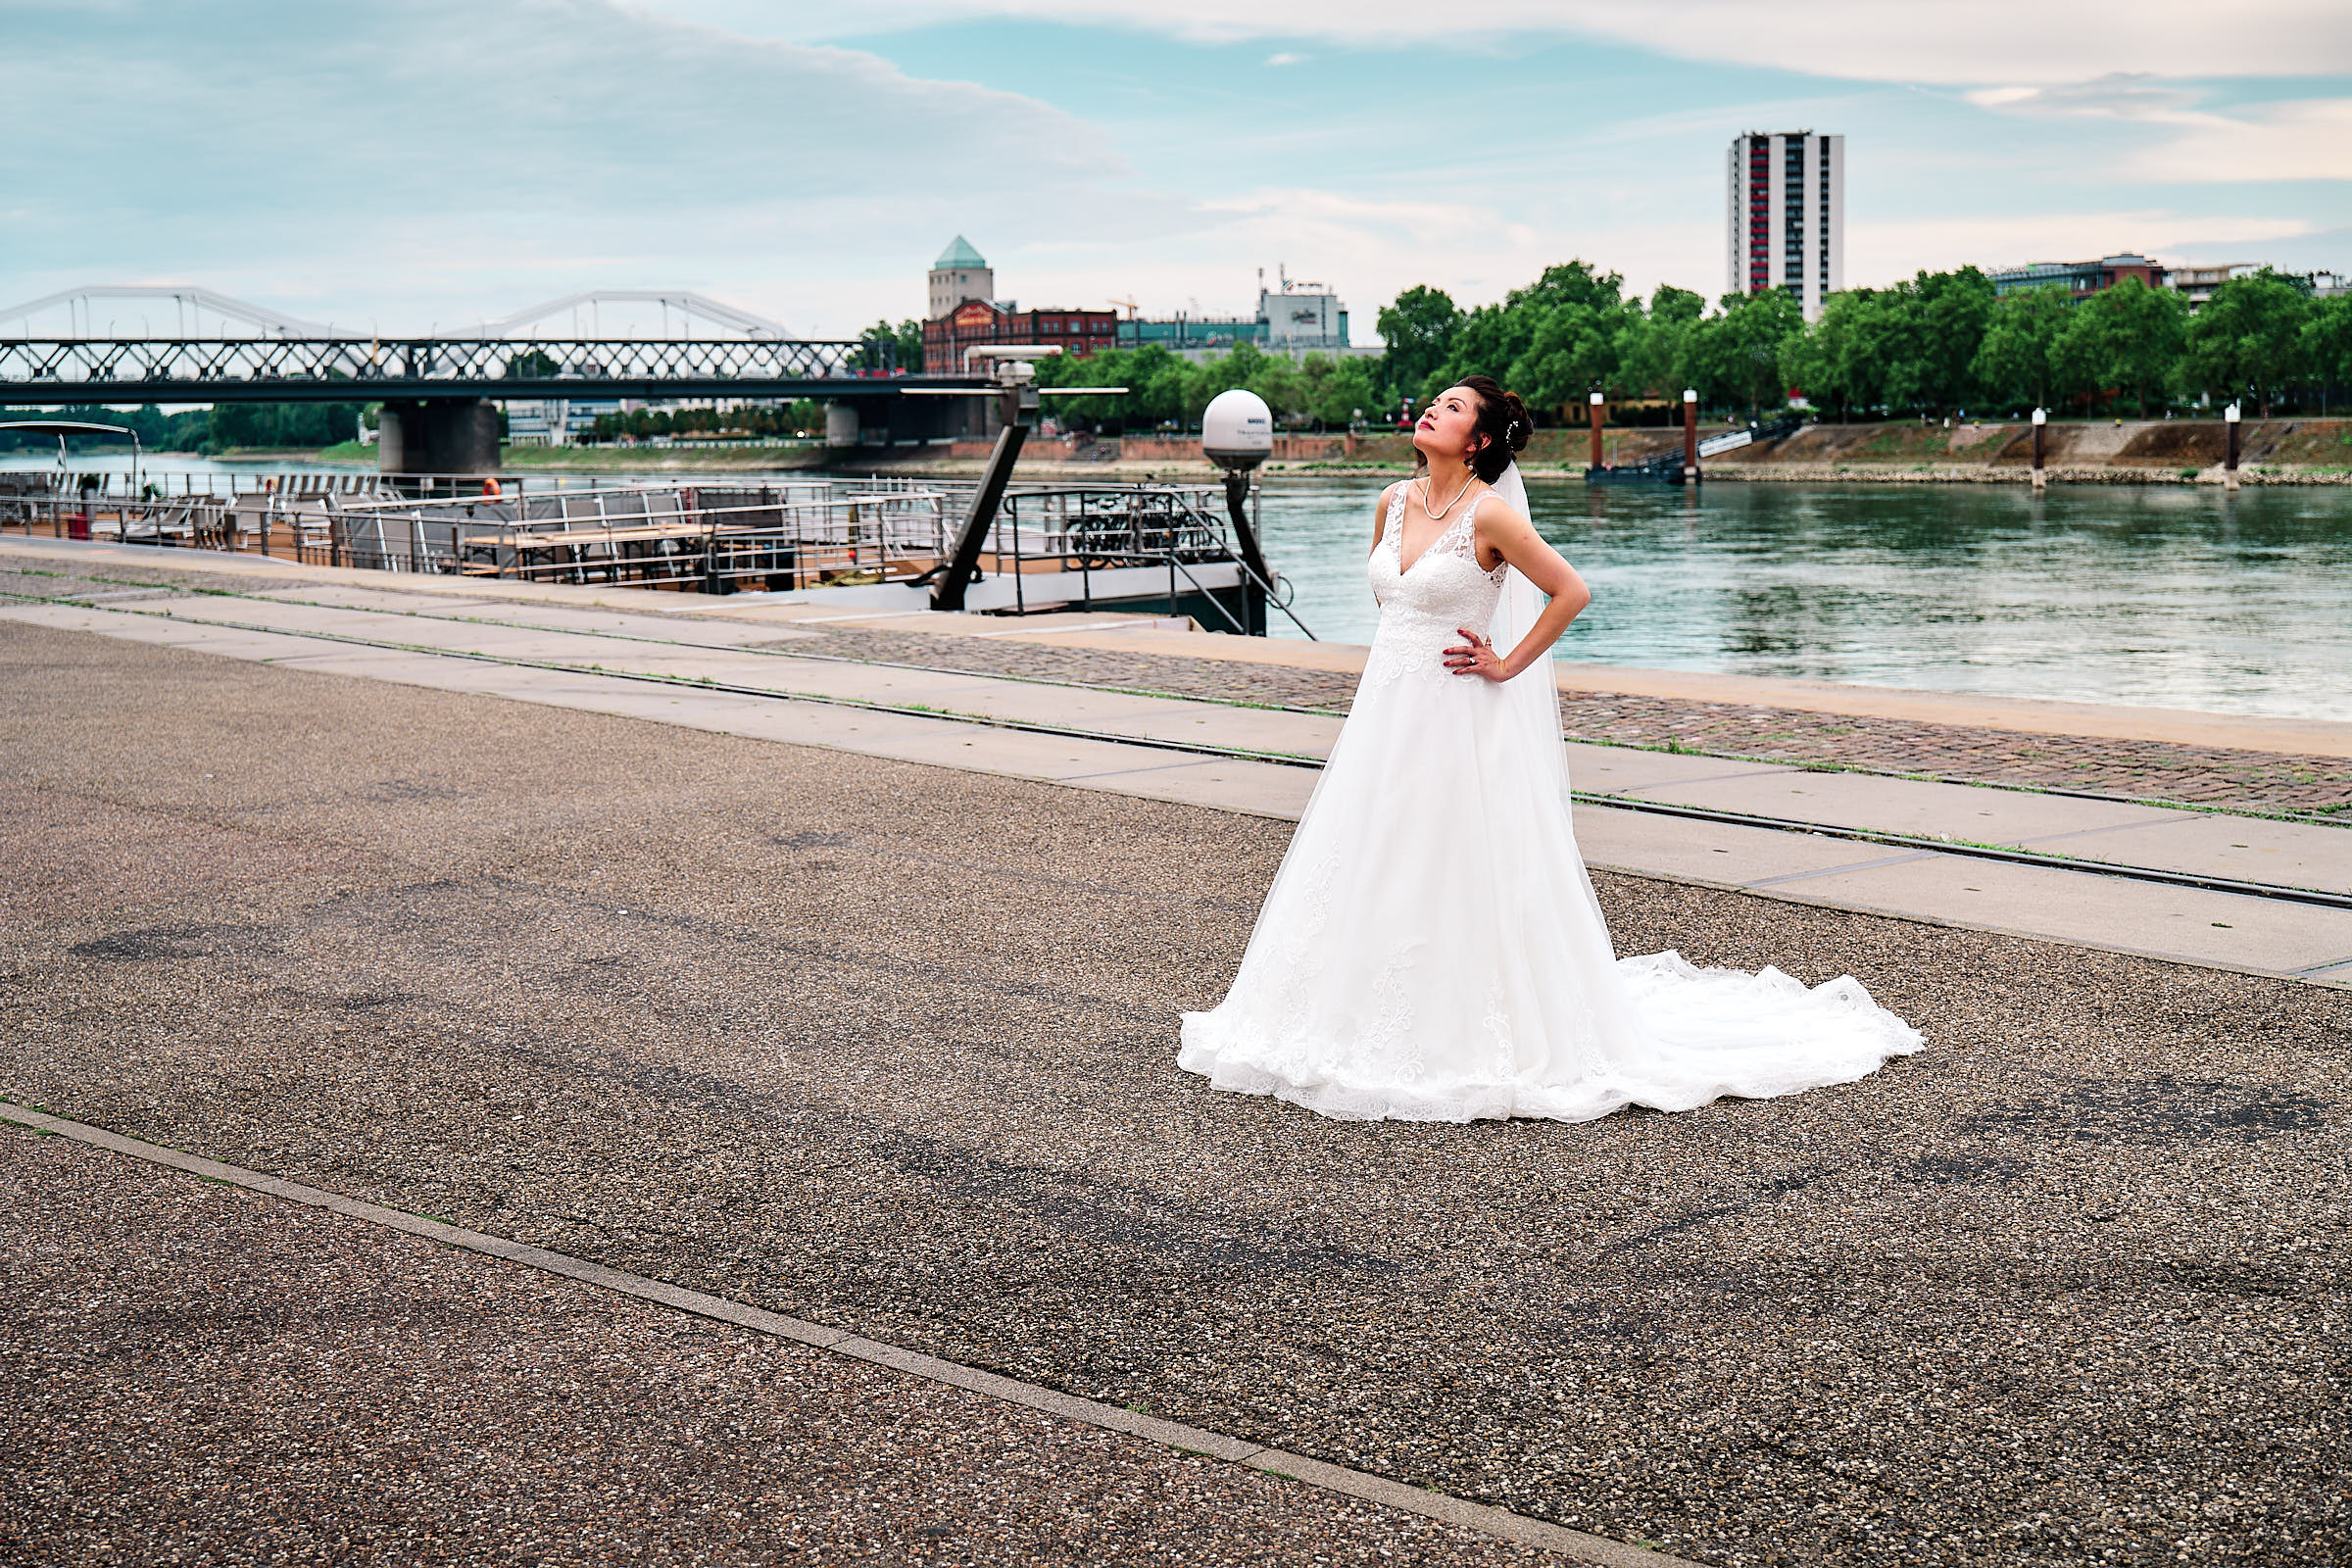 Luisenpark. Die Braut posiert für den Fotografen im Hafen.